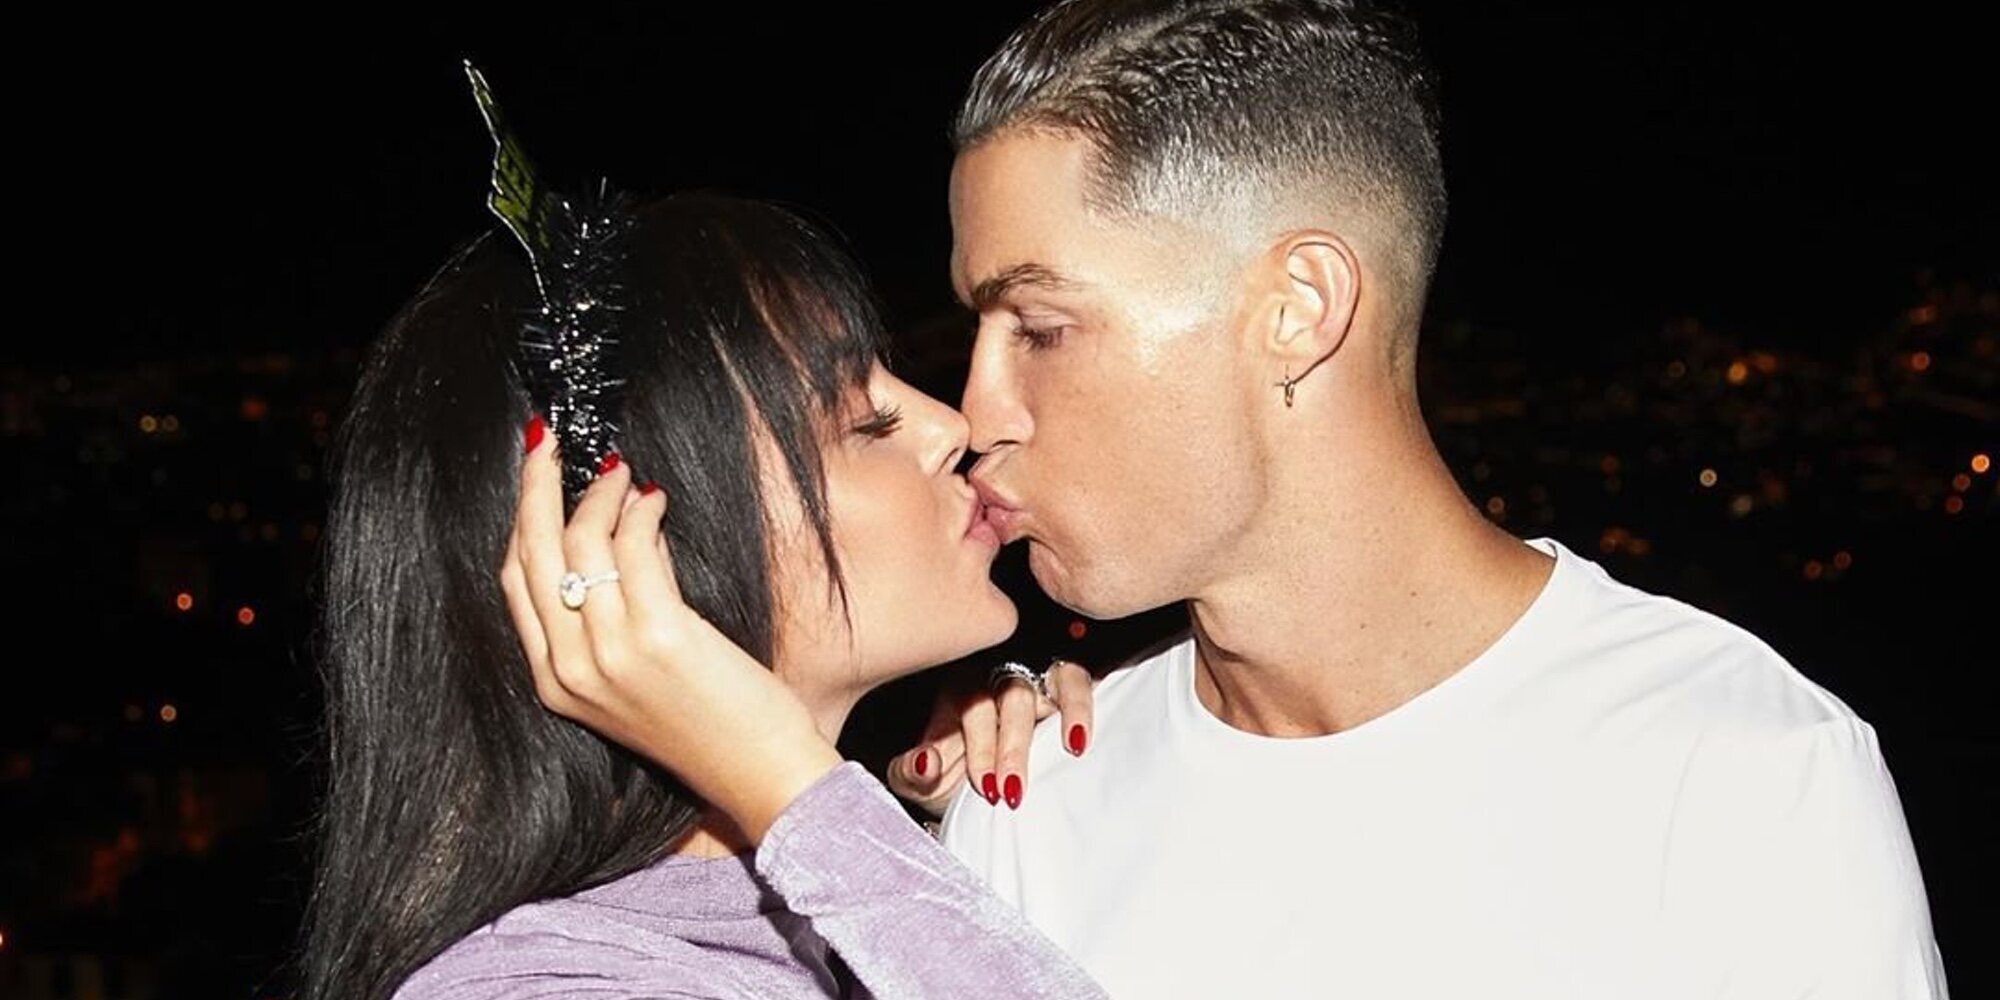 La escapada romántica de la que presume Georgina Rodríguez junto a Cristiano Ronaldo